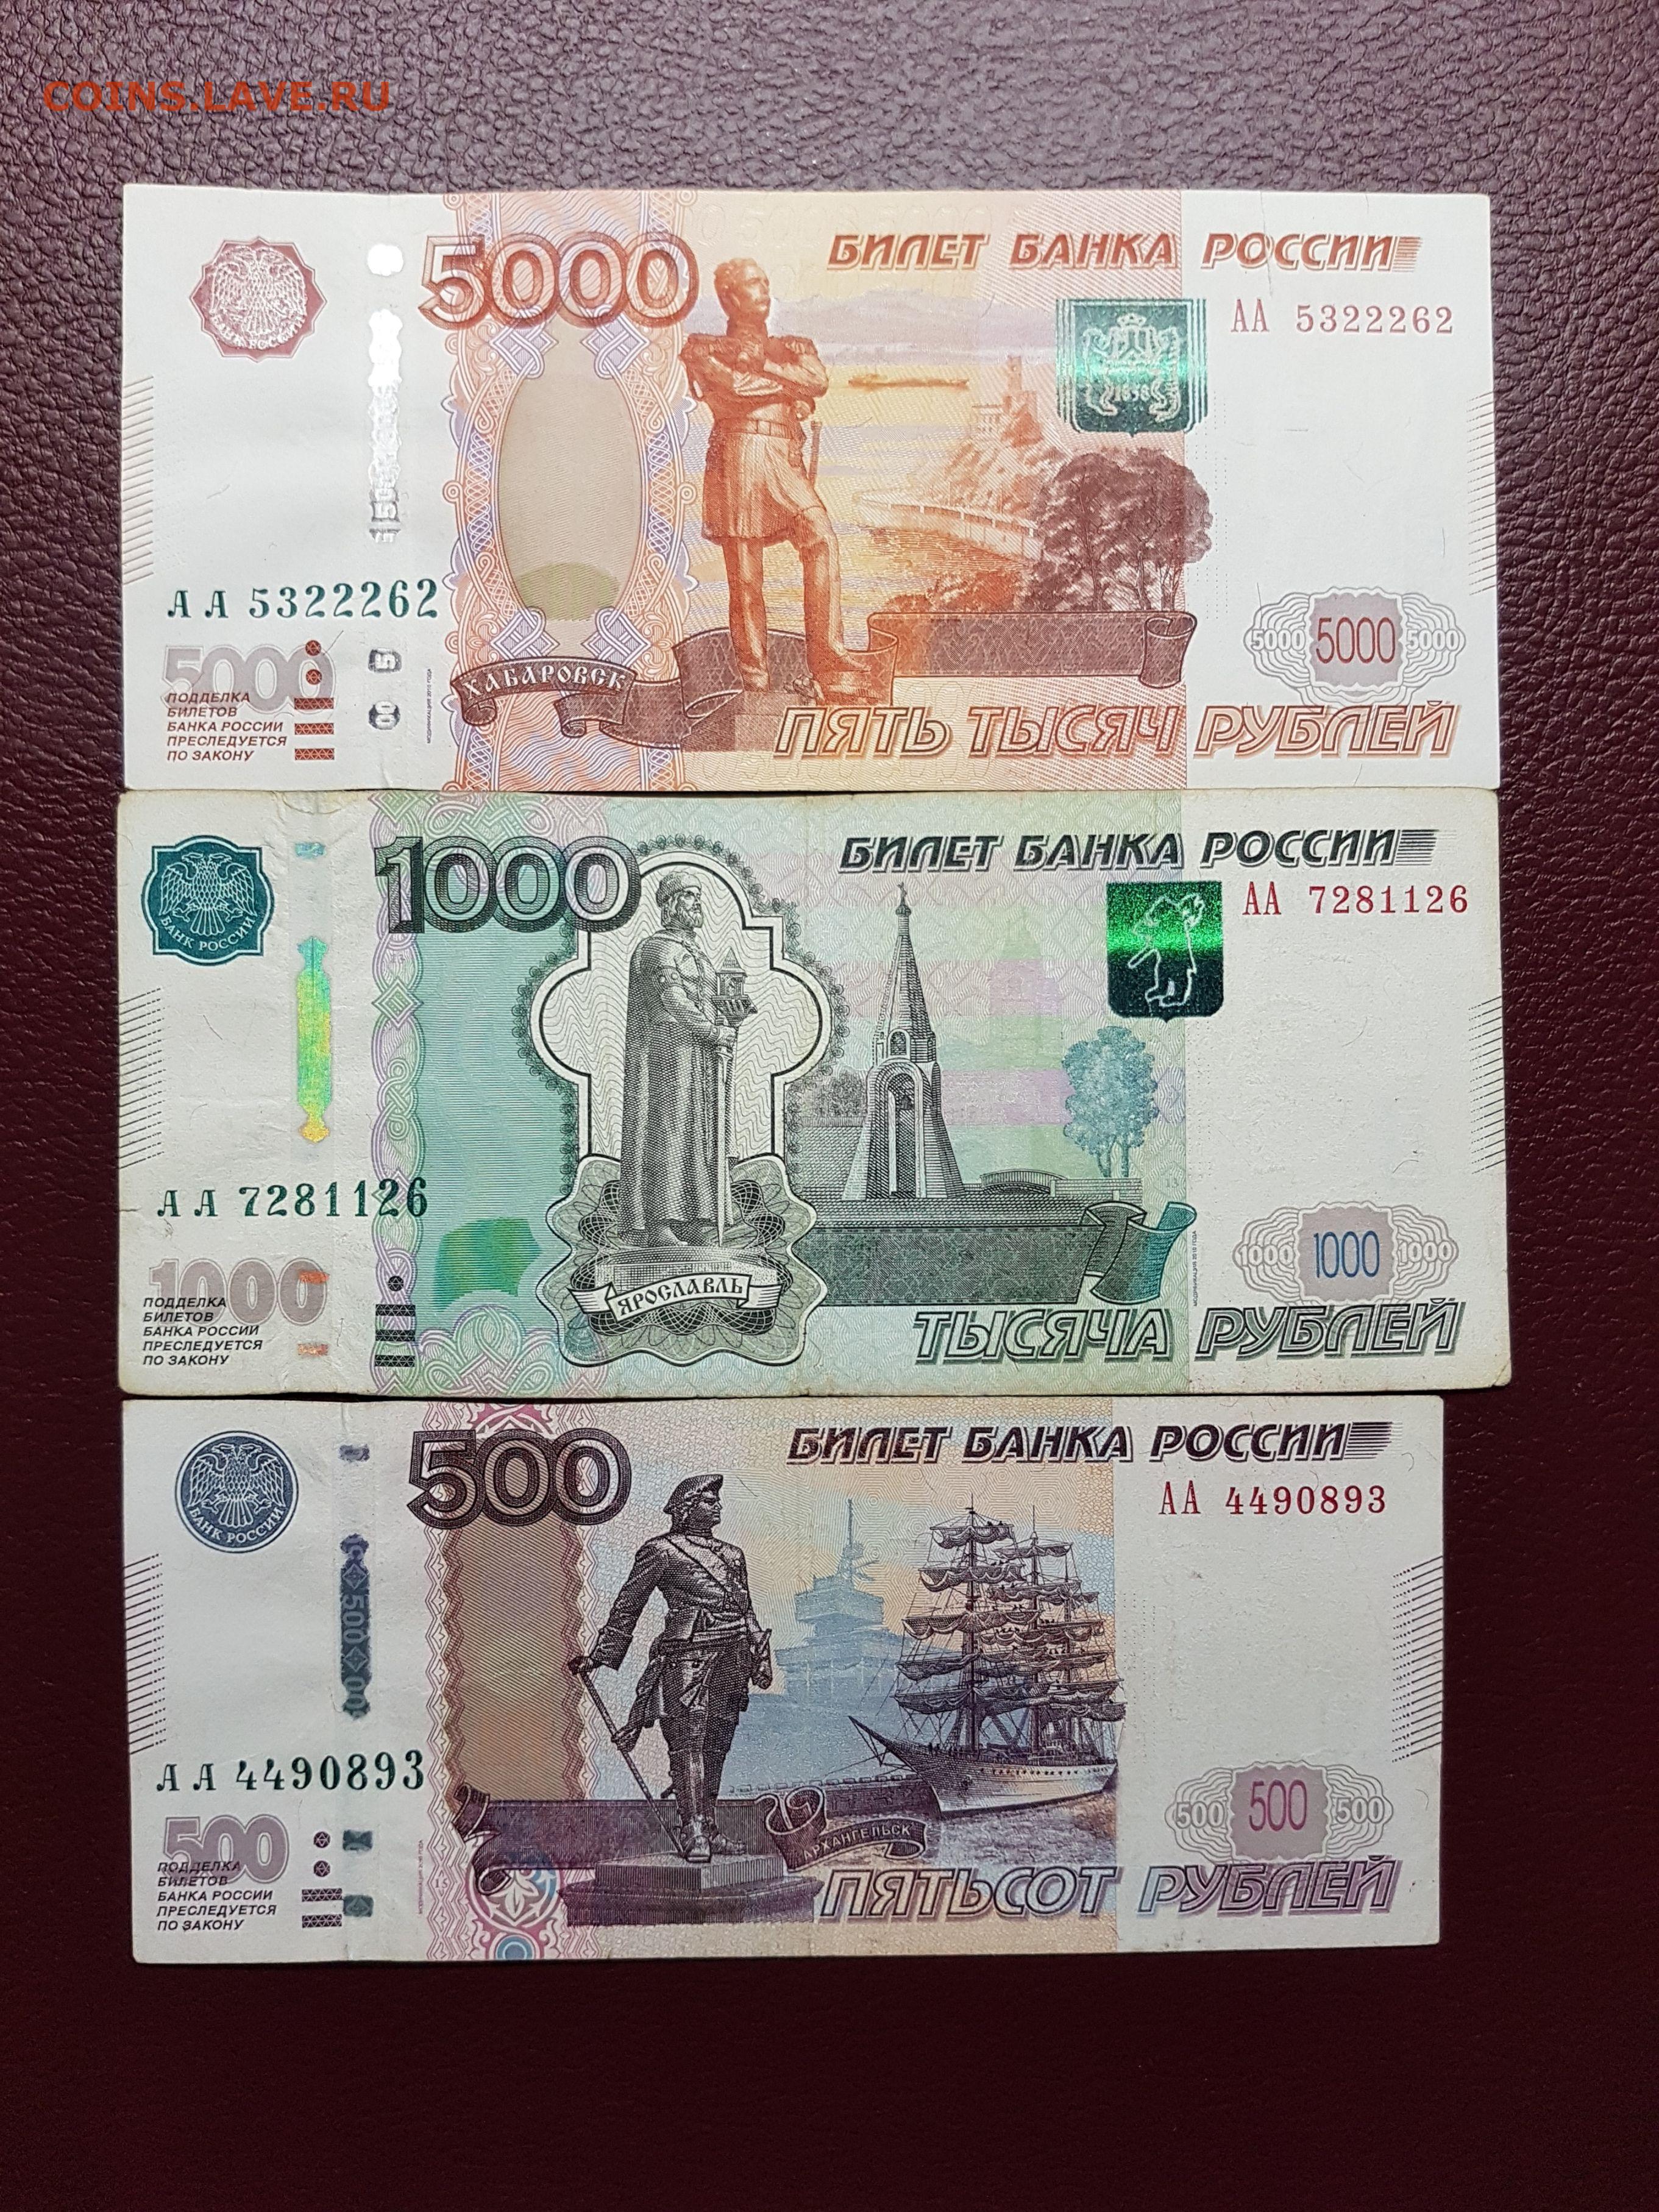 1000 рублей 2010. 1000 Рублей. 1000 Рублей 500 рублей. 500 Рублей и 5000 рублей. 1000 Рублей АА.